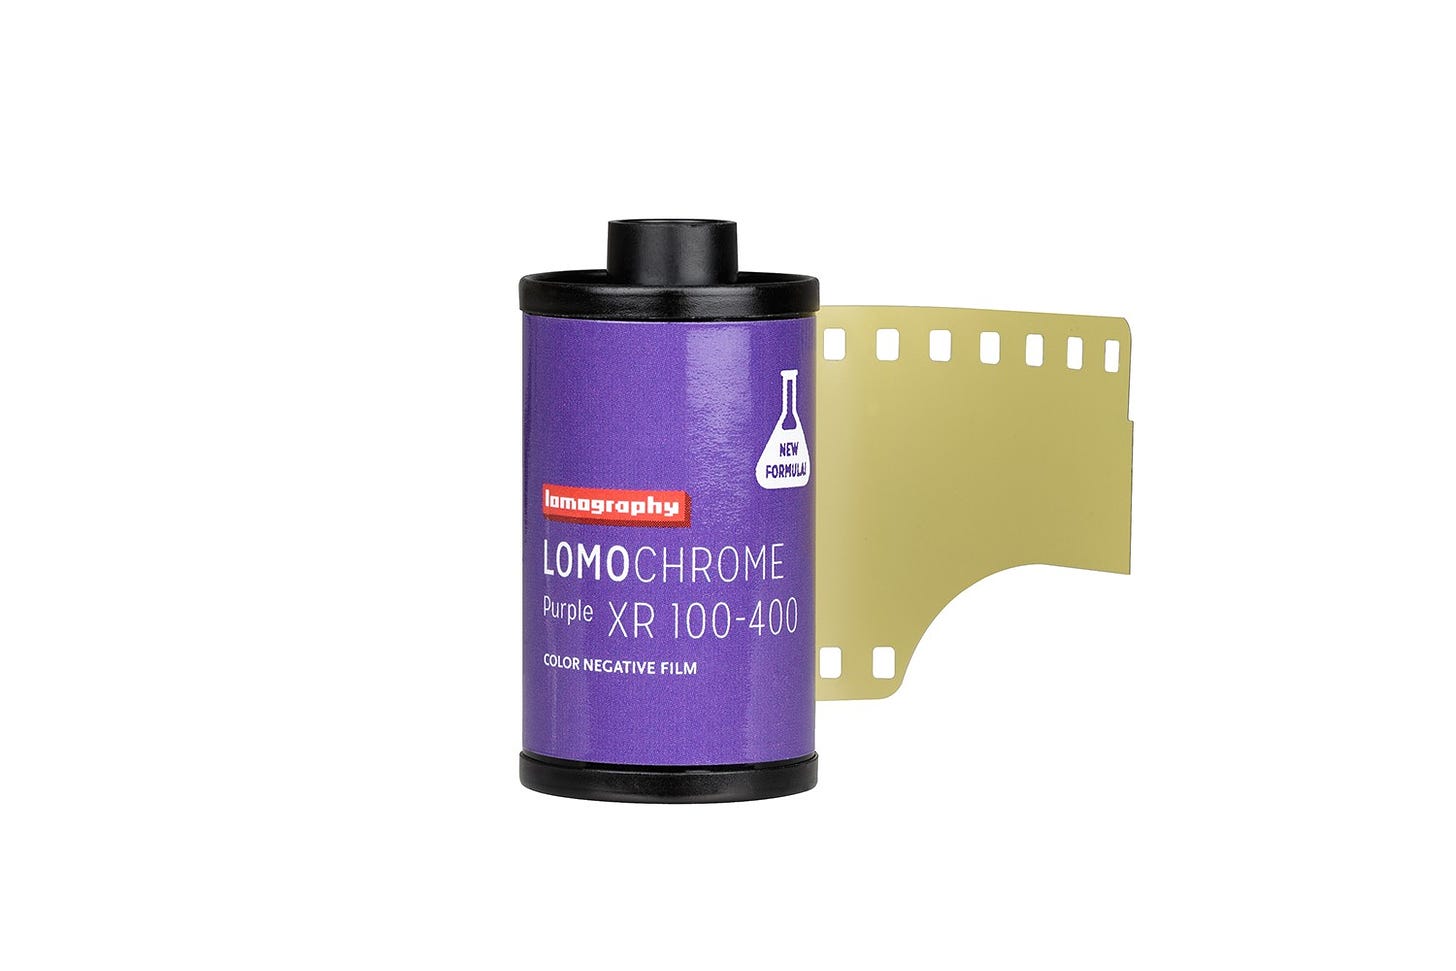 Lomochrome Purple 35 mm ISO 100-400 5 rolls